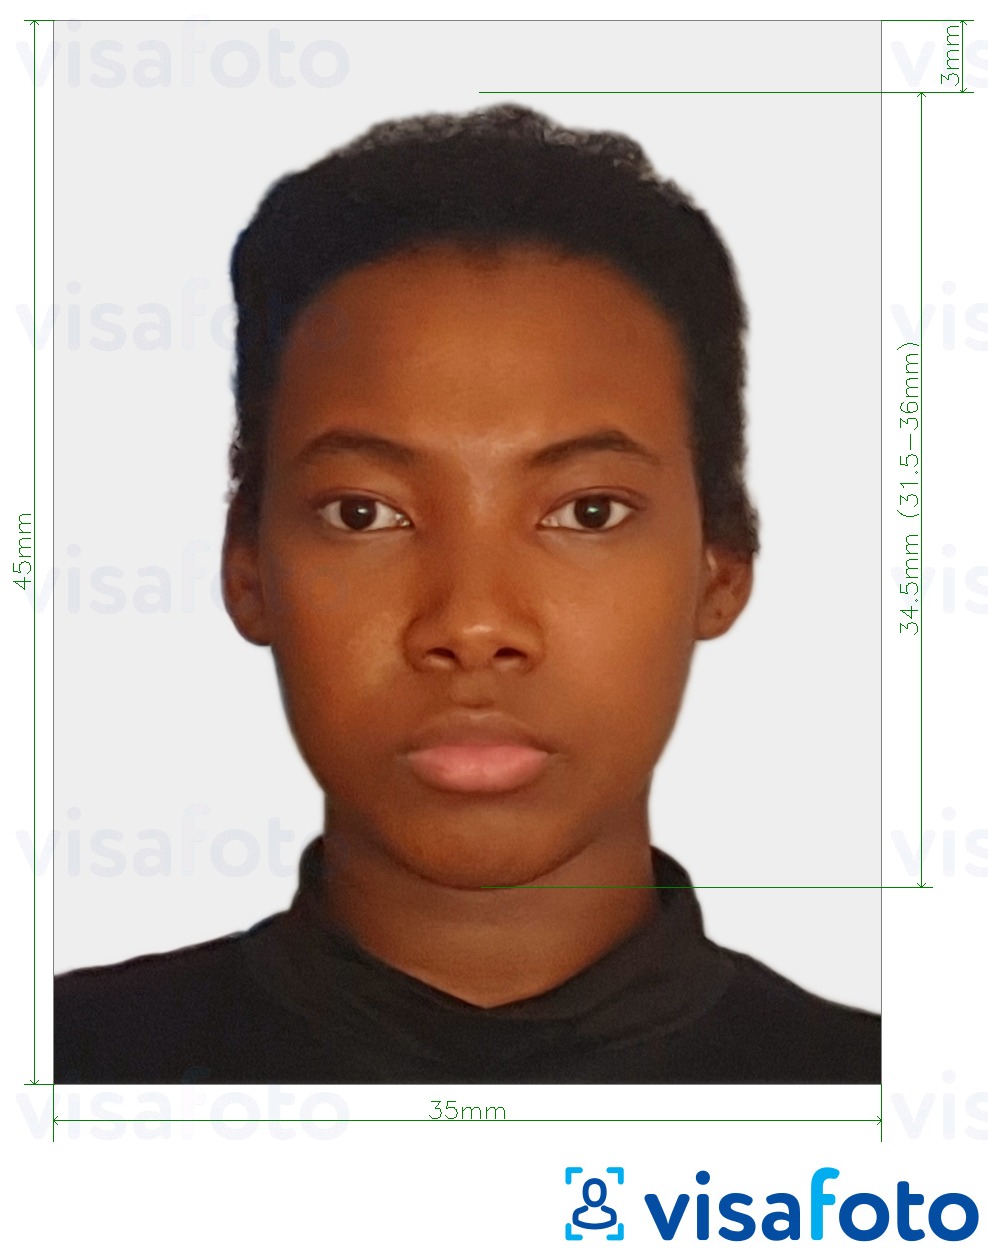 Ejemplo de foto para Visa de Surinam 45x35 mm (1.77x1.37 inch) con la especificación del tamaño exacto